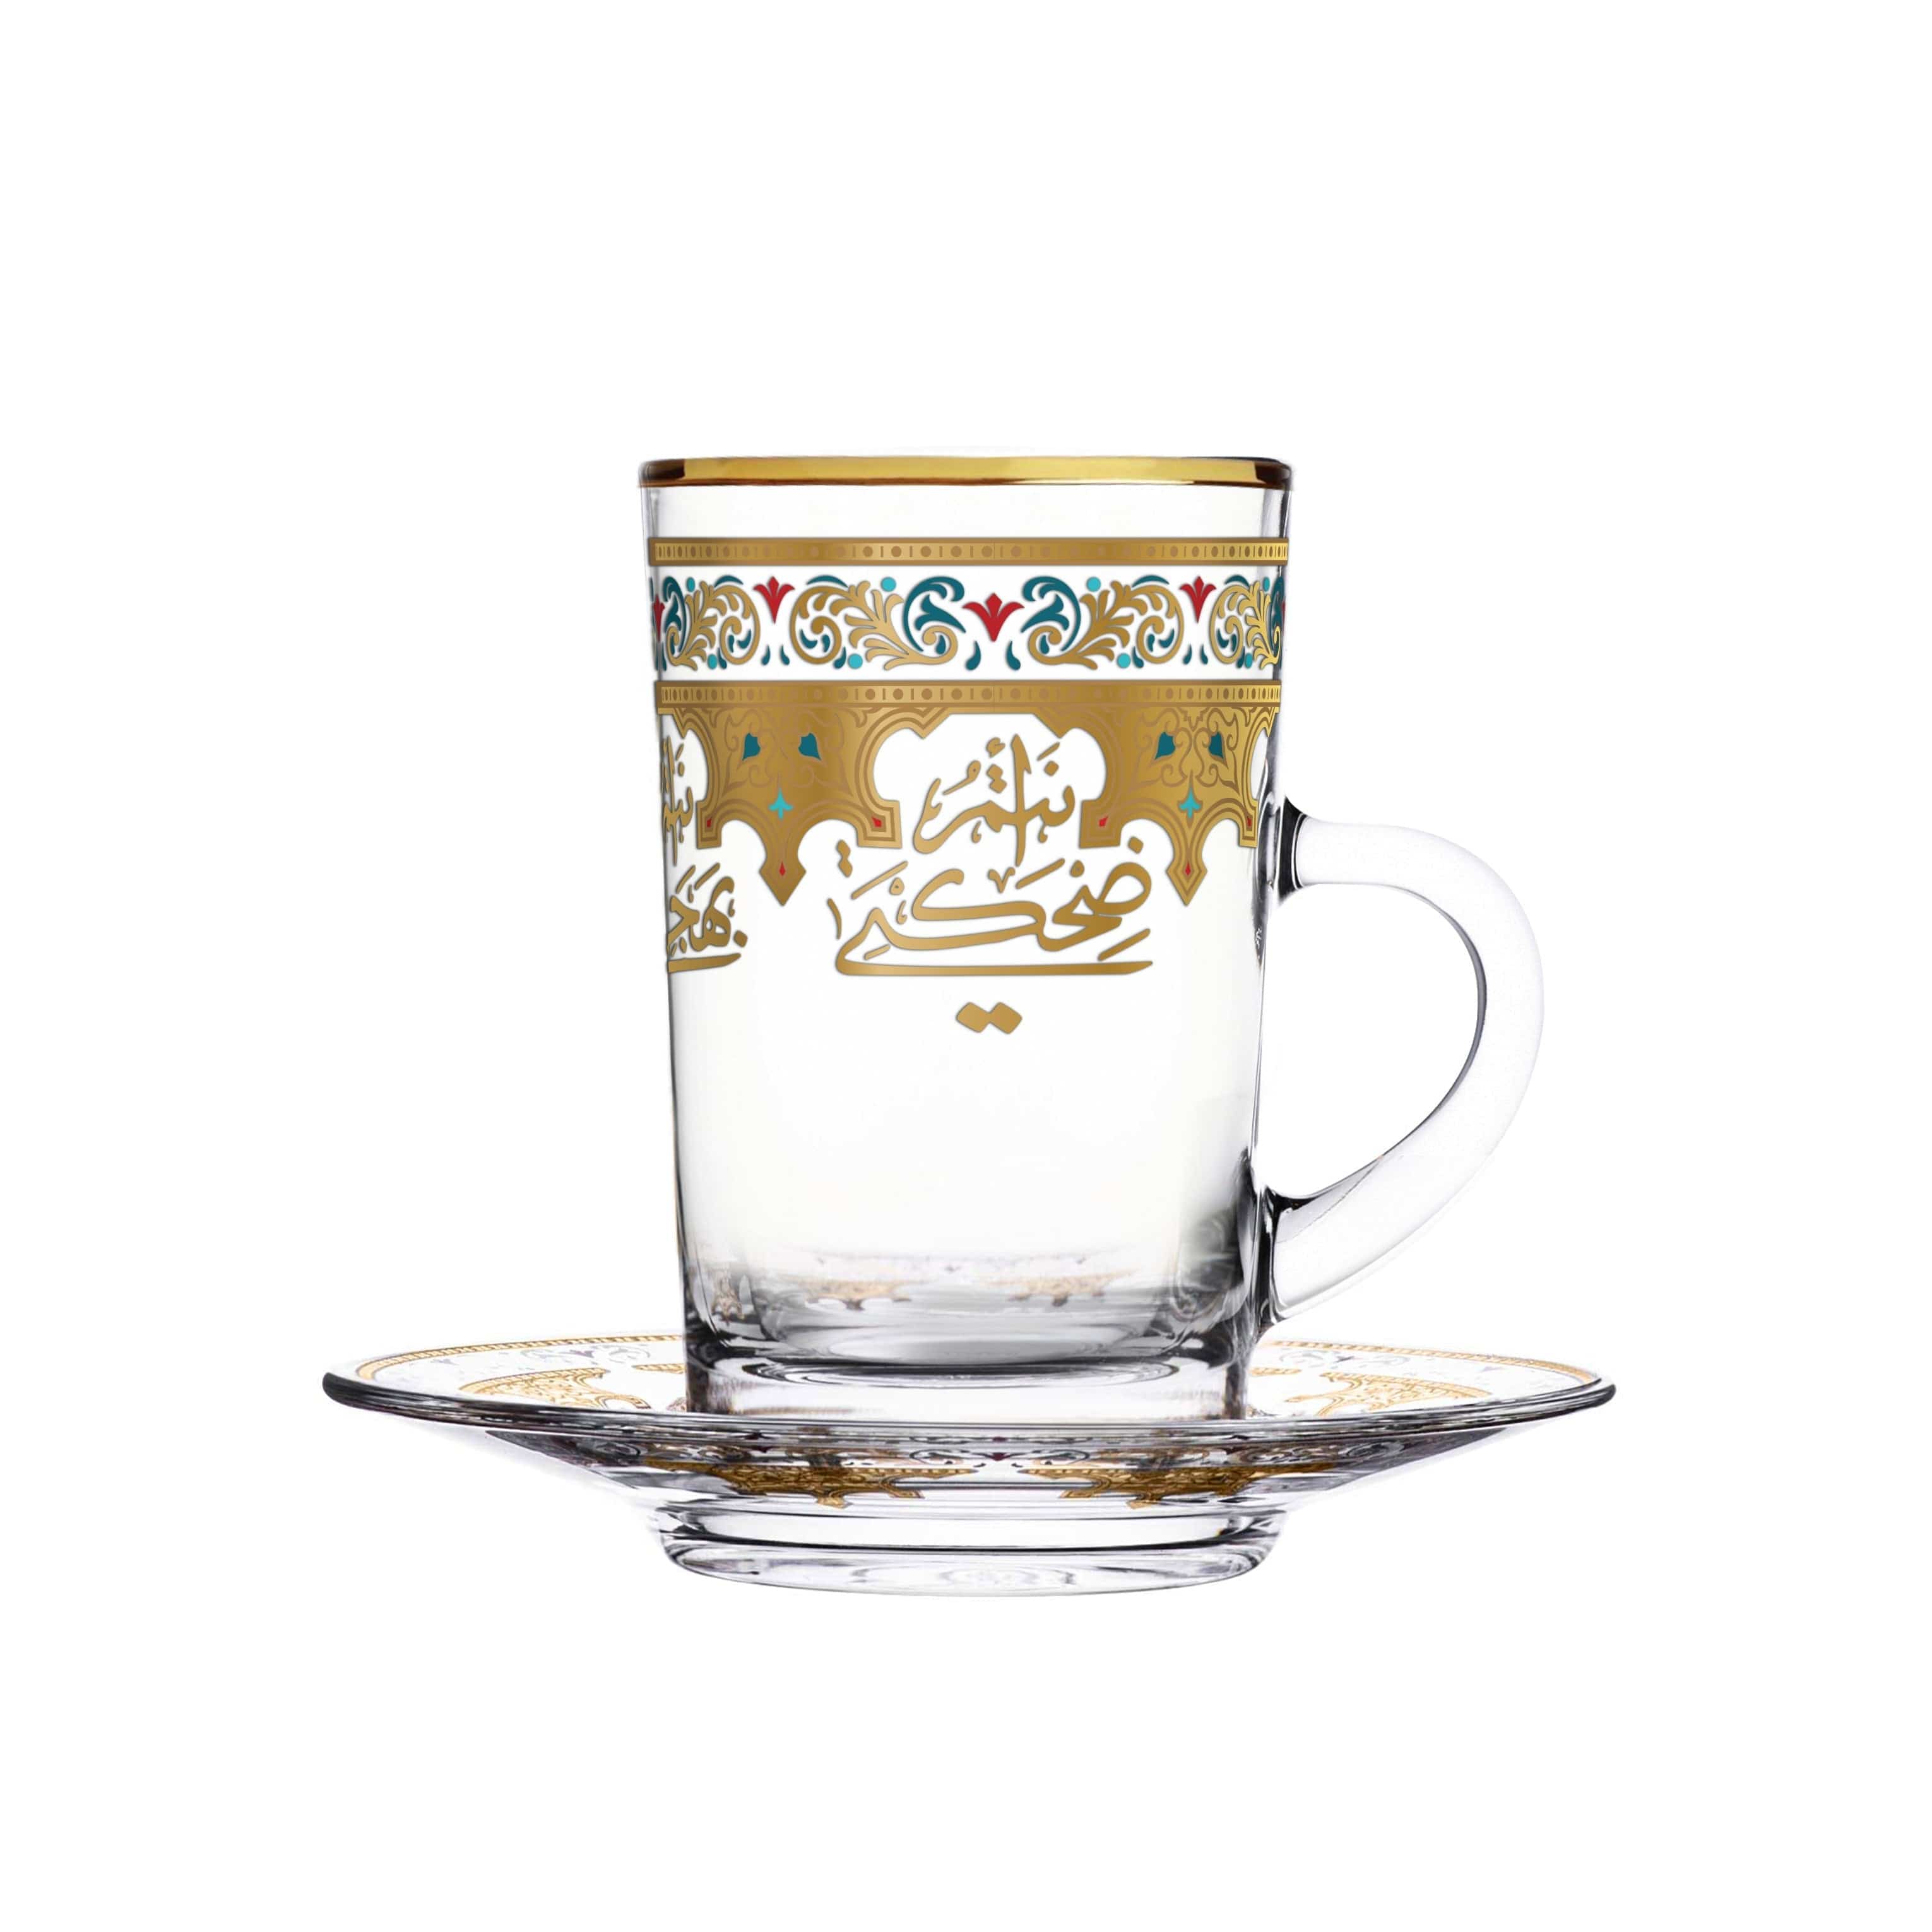 Dimlaj Suroor Set of 6 Pcs Tea Cups and Saucers (Gold)